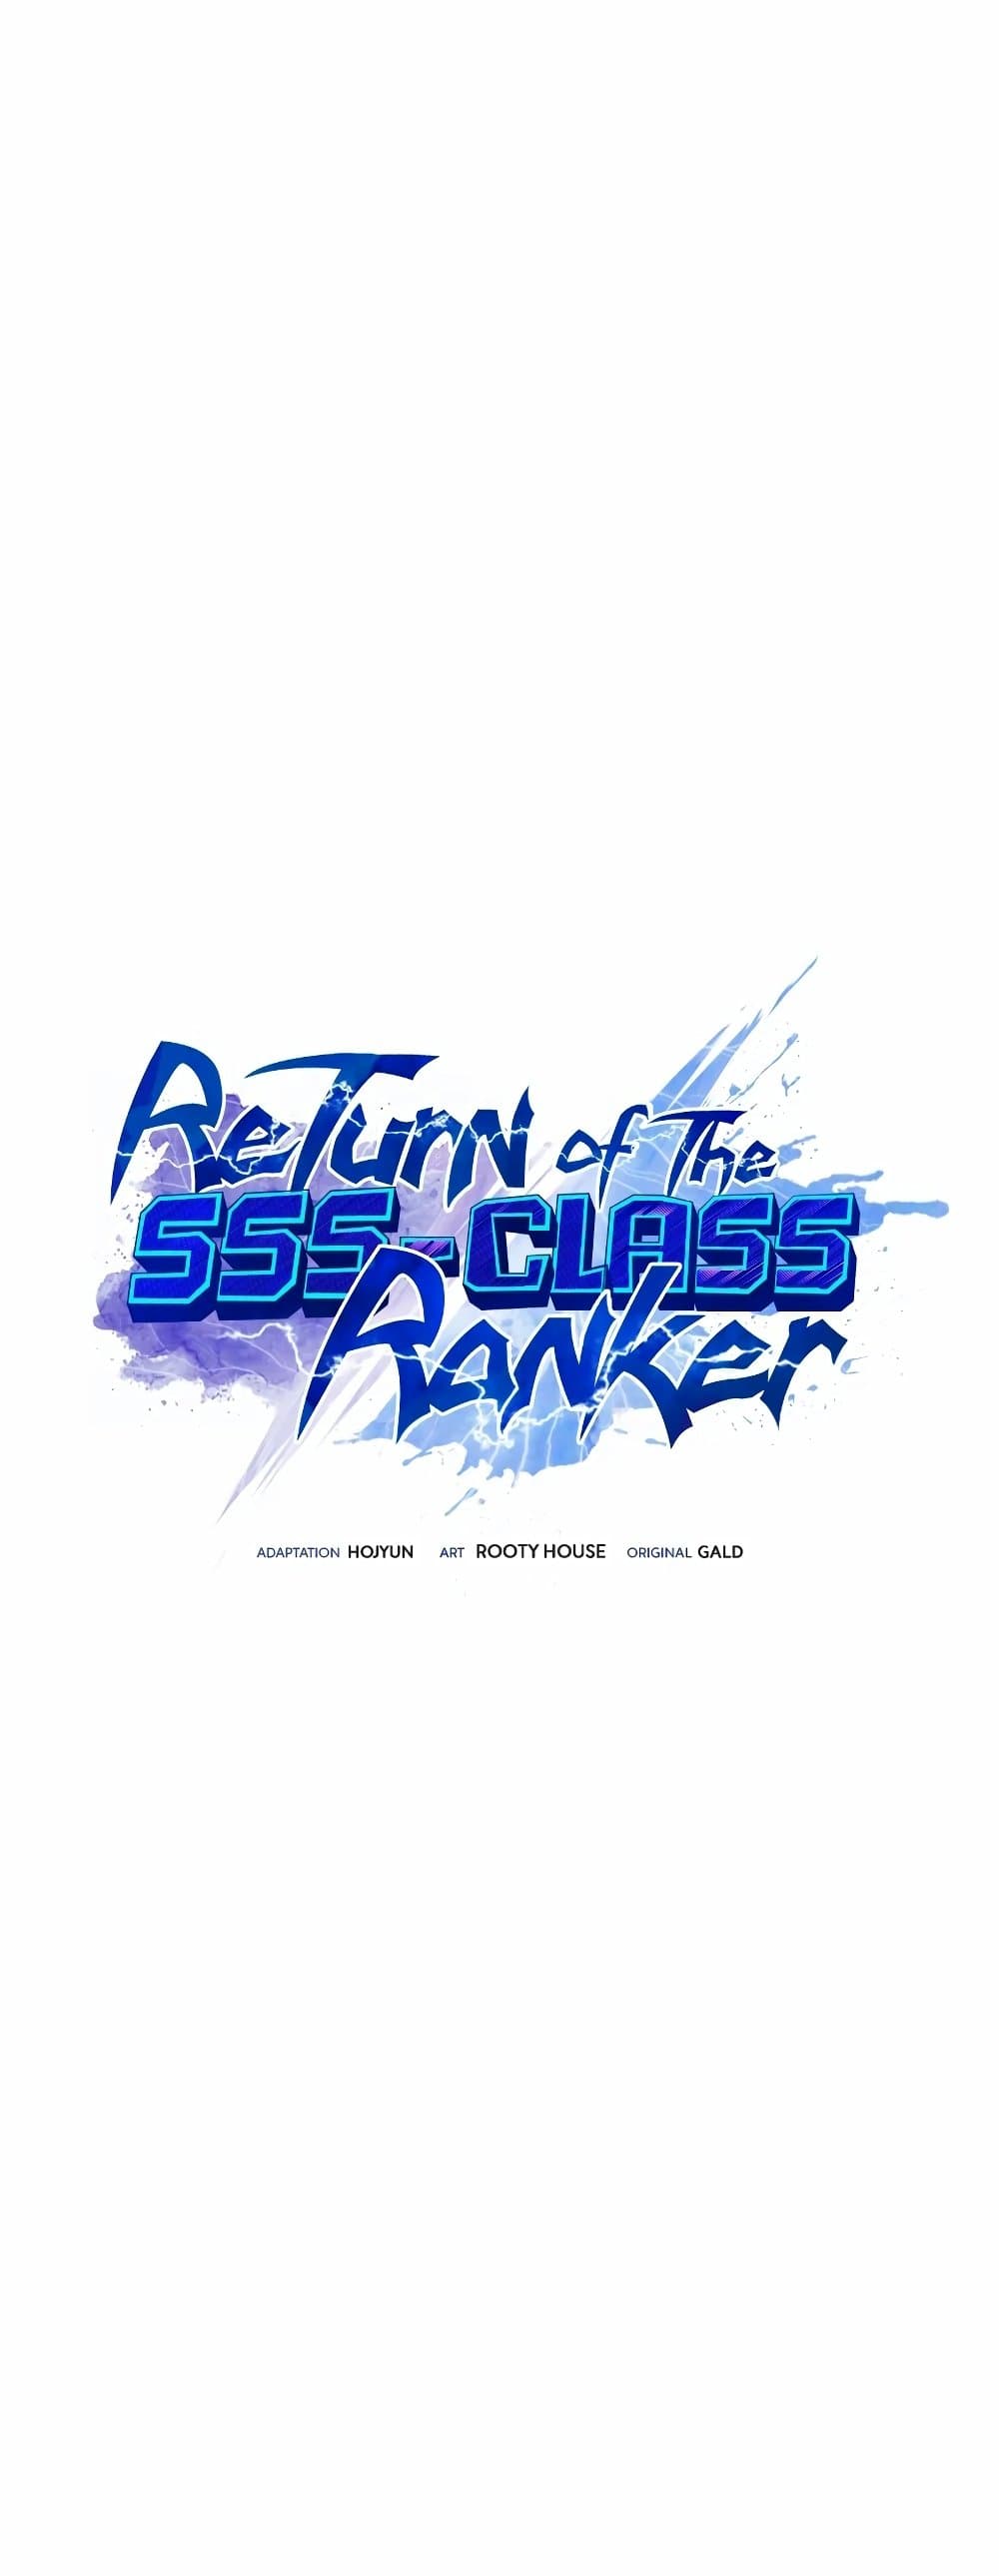 Return of the SSS-Class Ranker 51-51